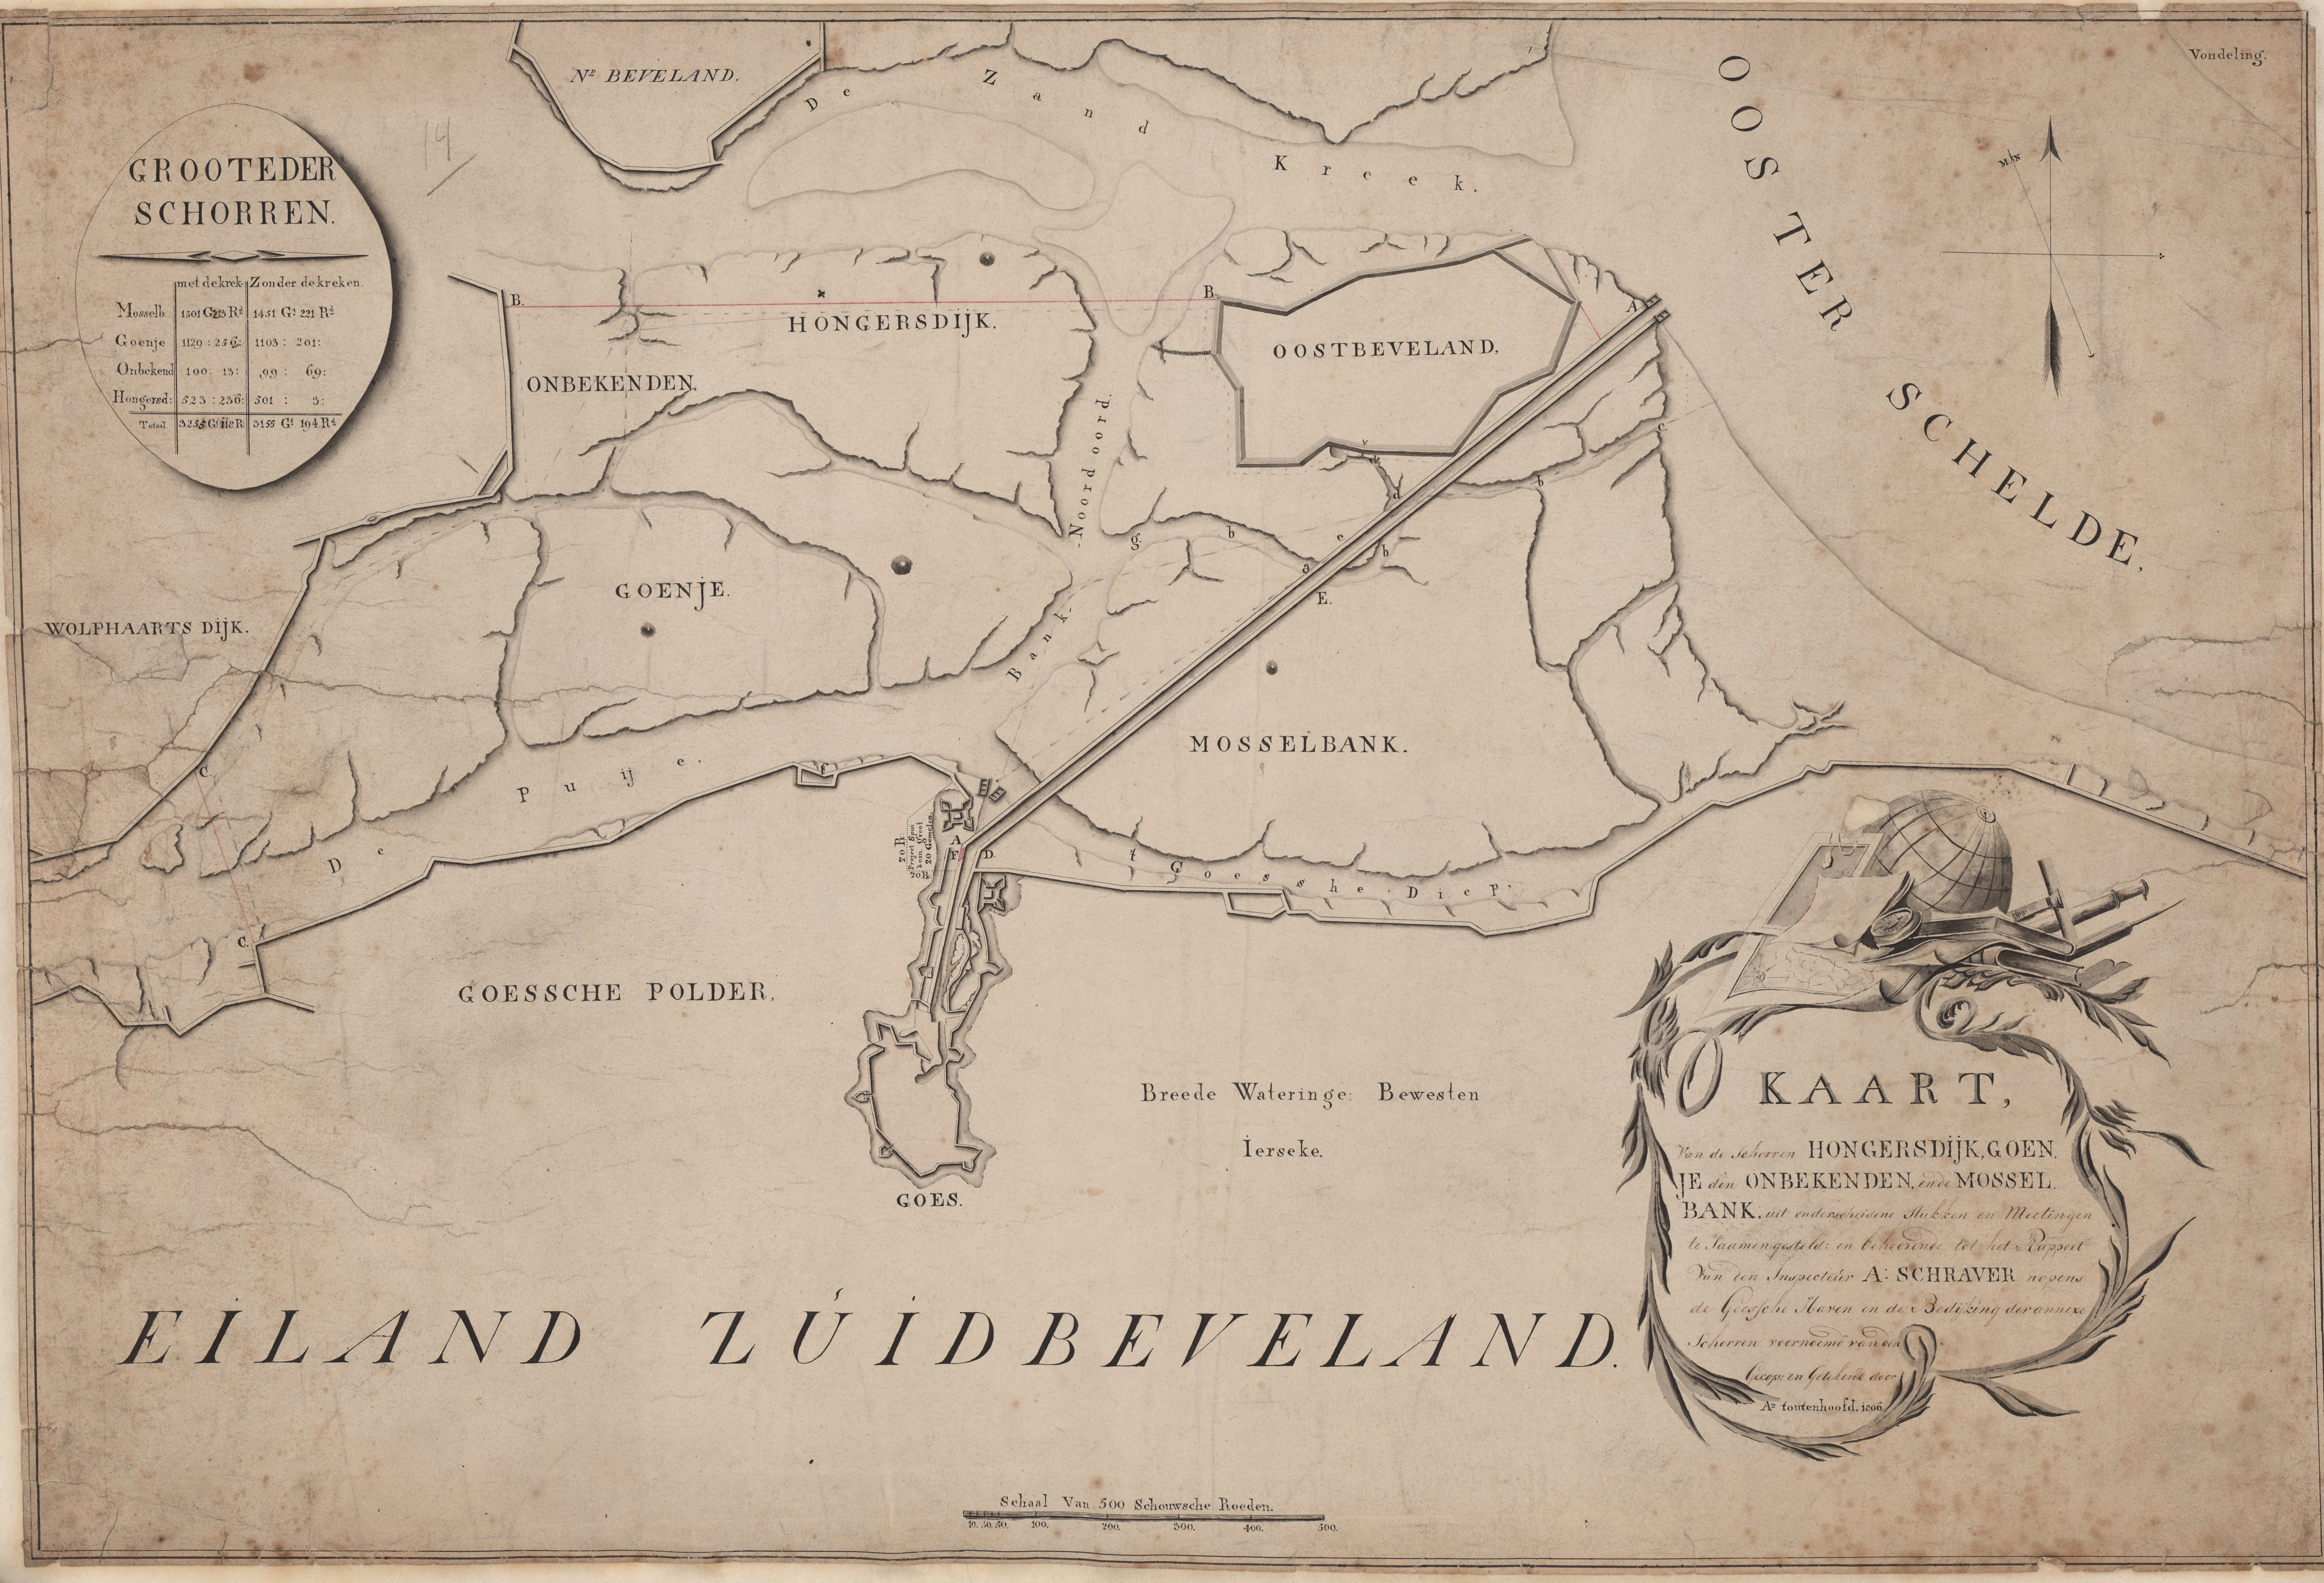 Kaart van de schorren ten noorden van Goes, door A. Toutenhoofd, 1806.